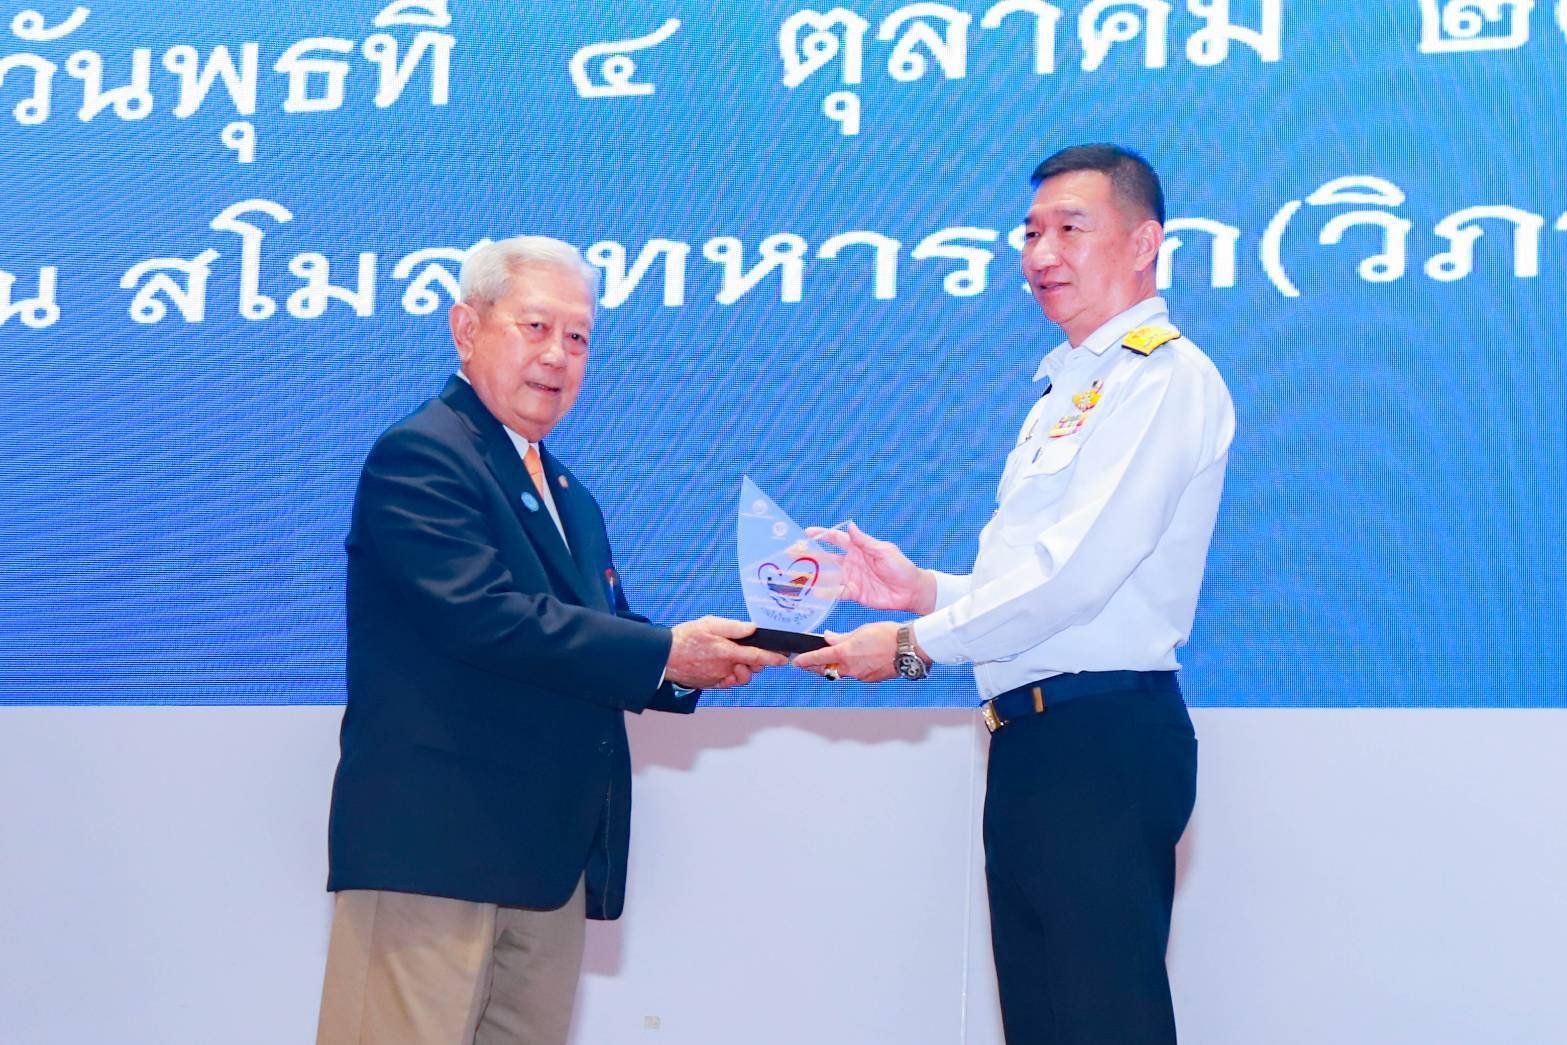 อพวช. รับโล่แสดงความขอบคุณจากประธานในพิธีเปิดโครงการ “สานใจไทย สู่ใจใต้” รุ่นที่ 41